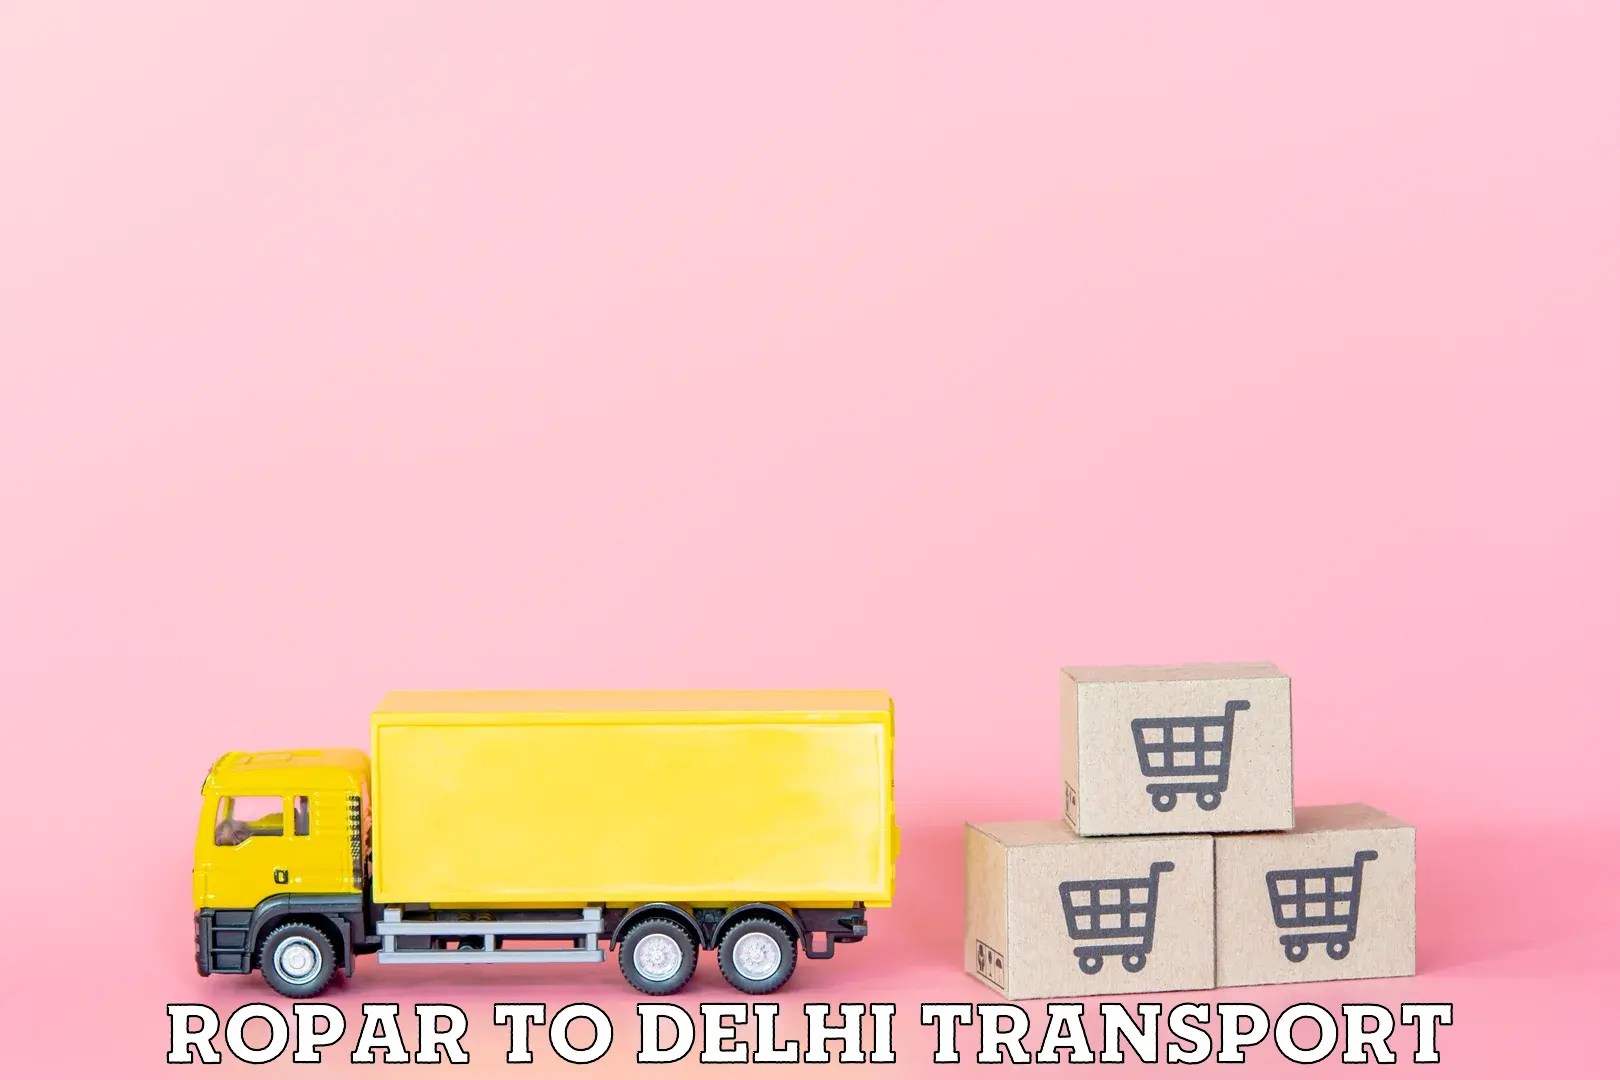 Online transport service Ropar to NIT Delhi